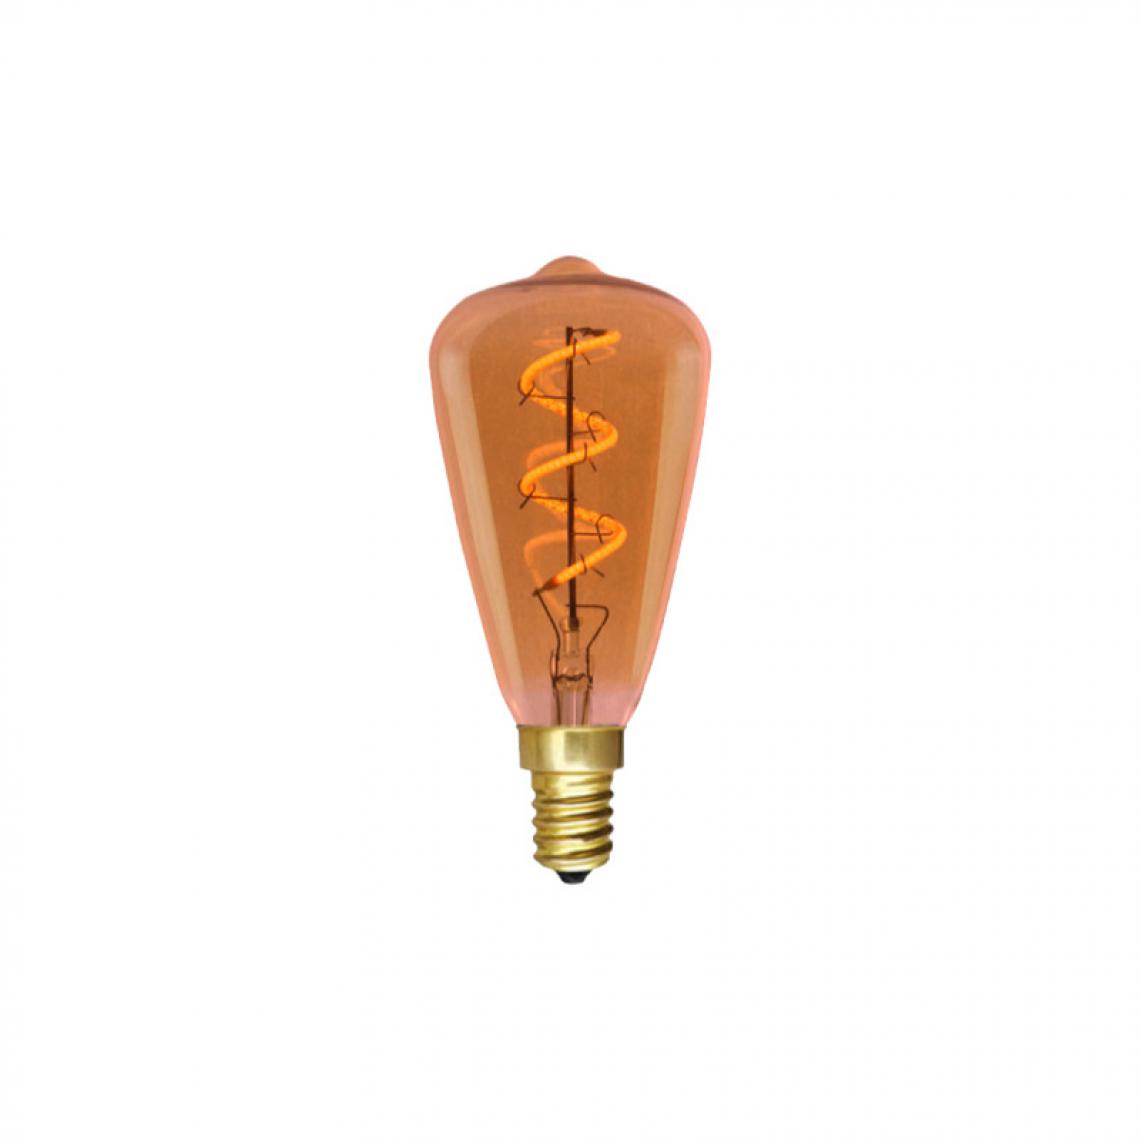 Xxcell - Ampoule LED poire à filament XXCELL - 4 W - 220 lumens - 2200 K - E14 - Ampoules LED